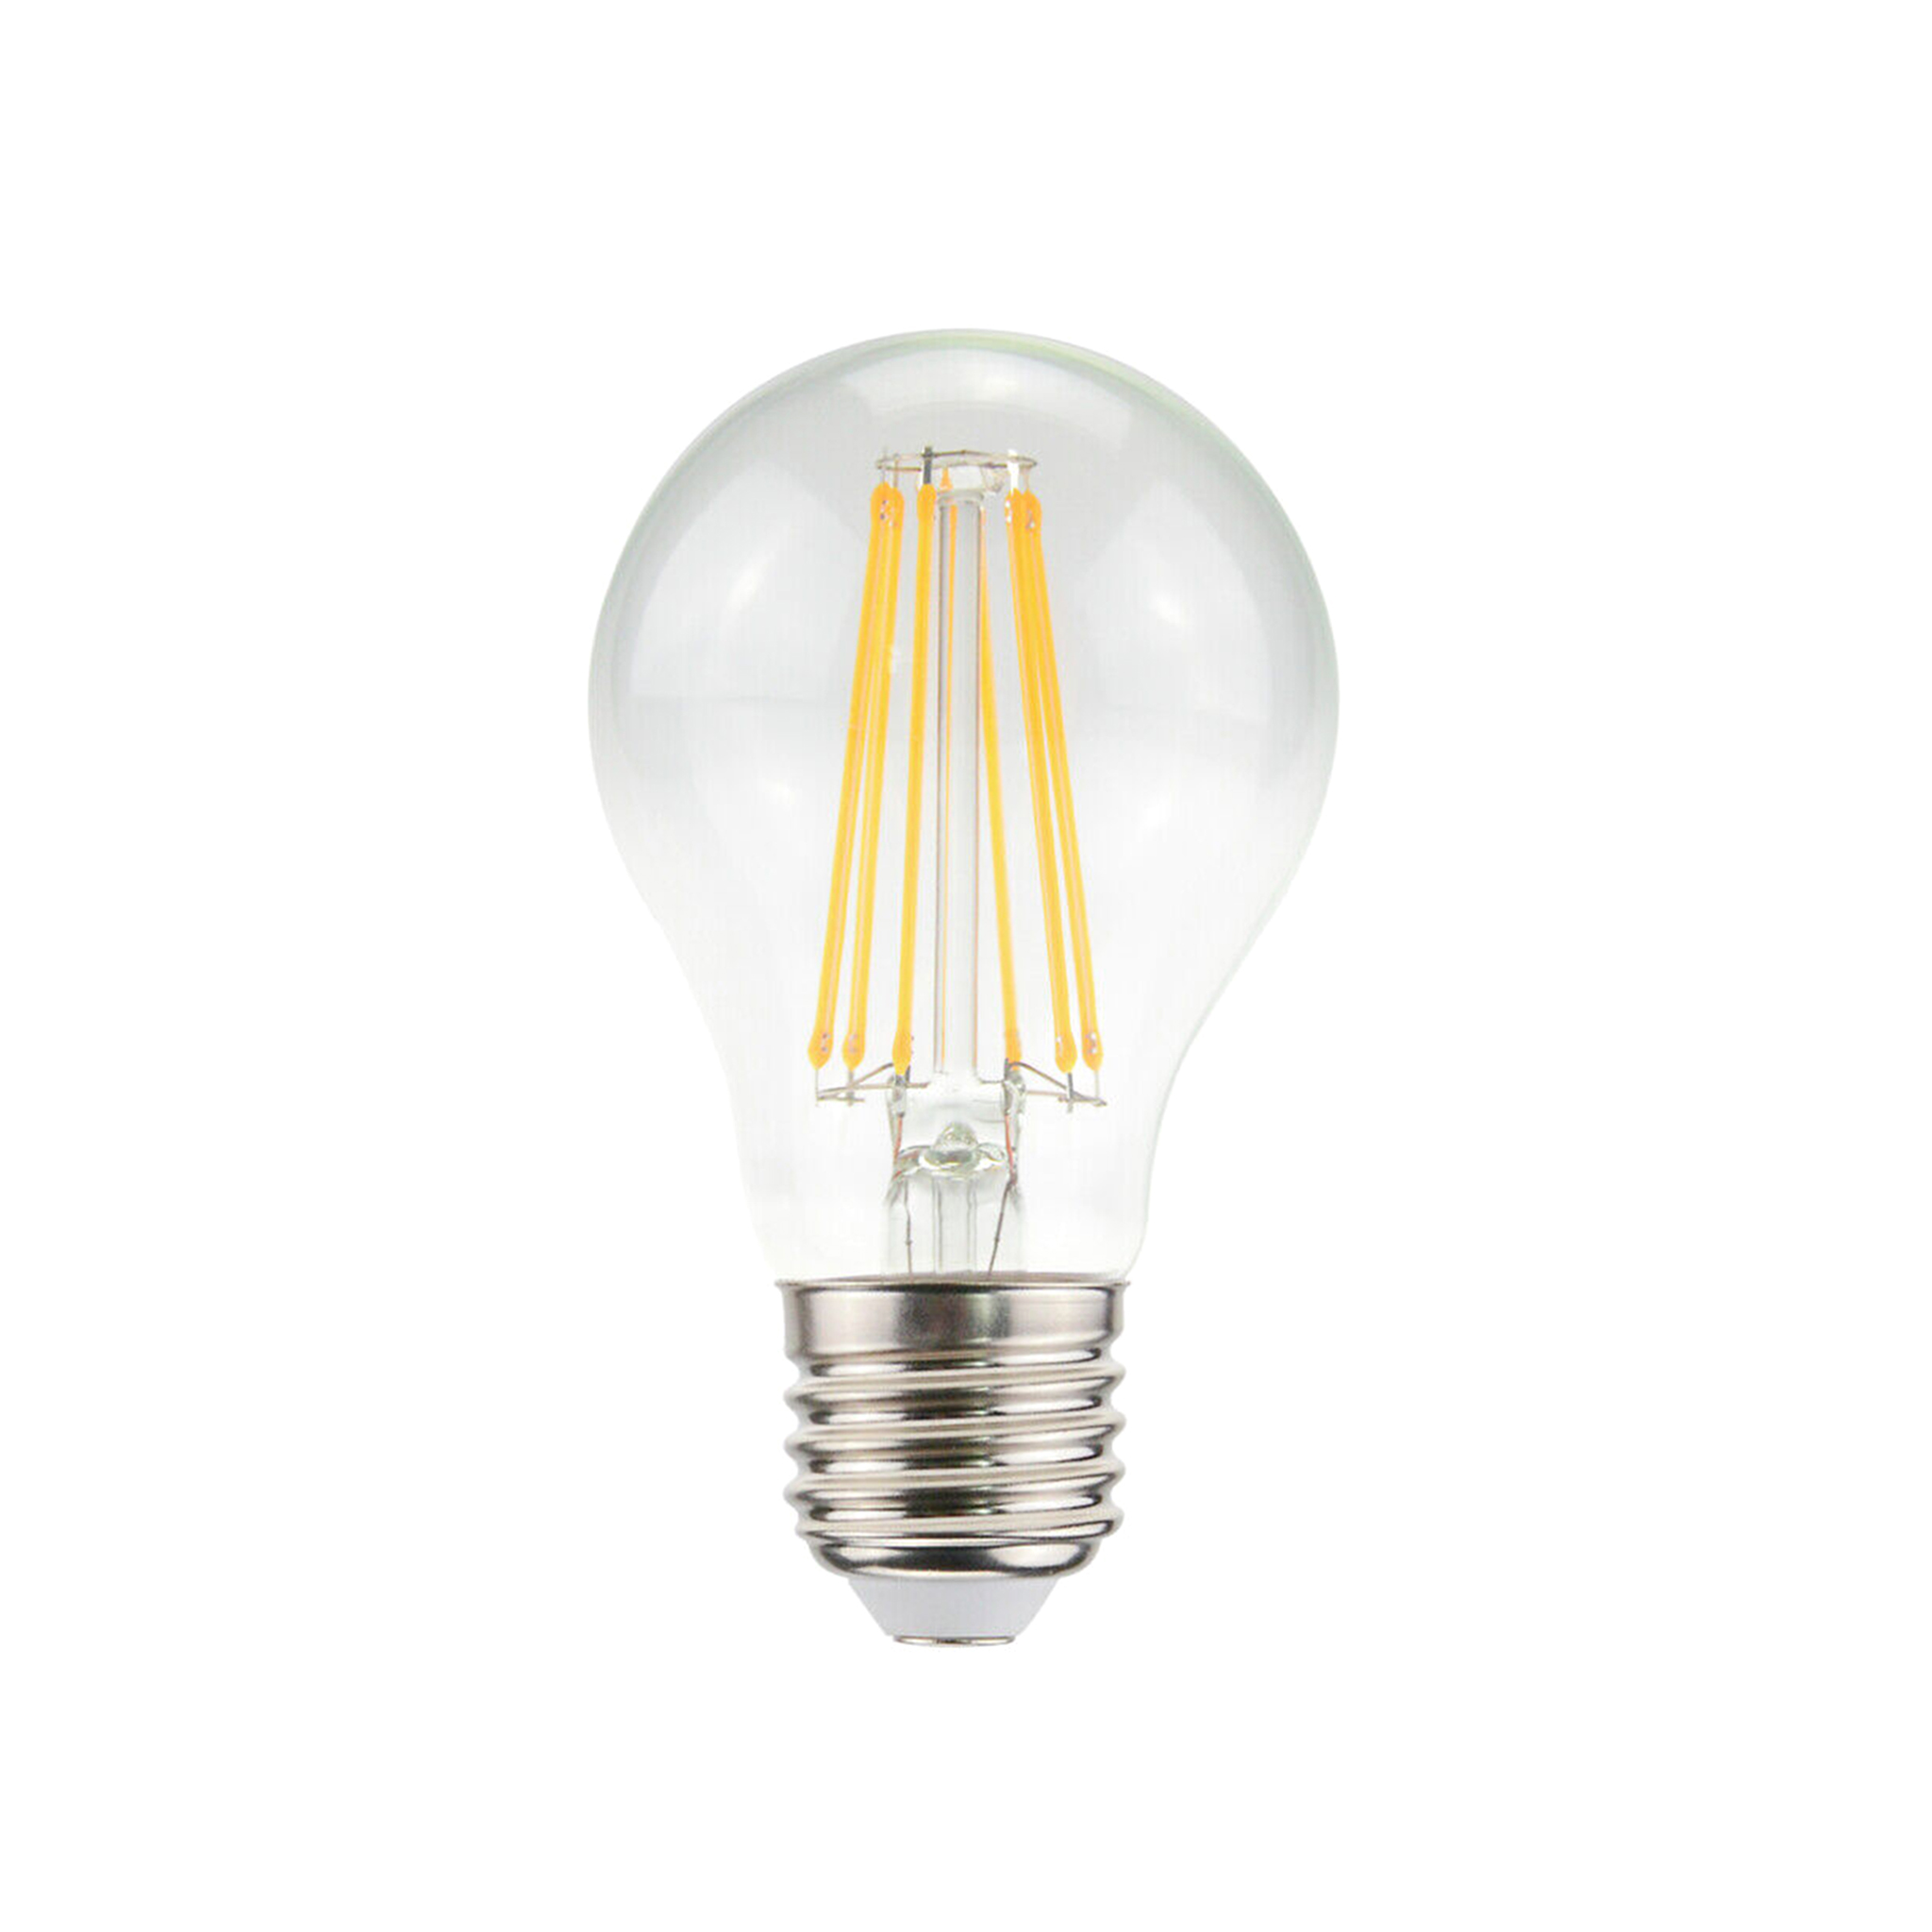 LED-lampa Airam E27 Filament - 2700K / 7.5 W / Dimbar